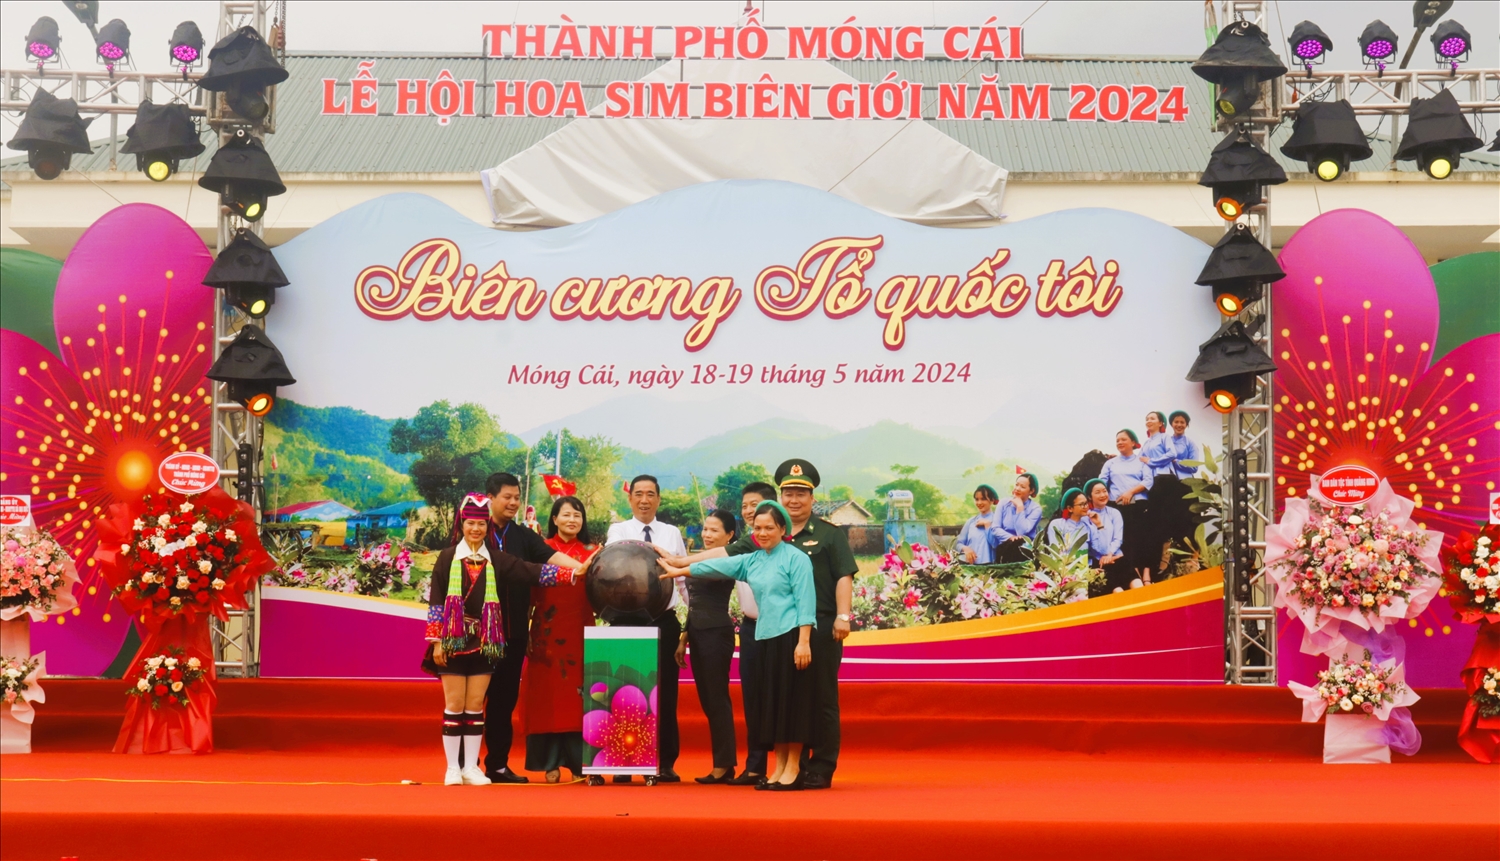 Các đại biểu nhấn nút khai mạc lễ hội hoa sim biên giới Móng Cái năm 2024